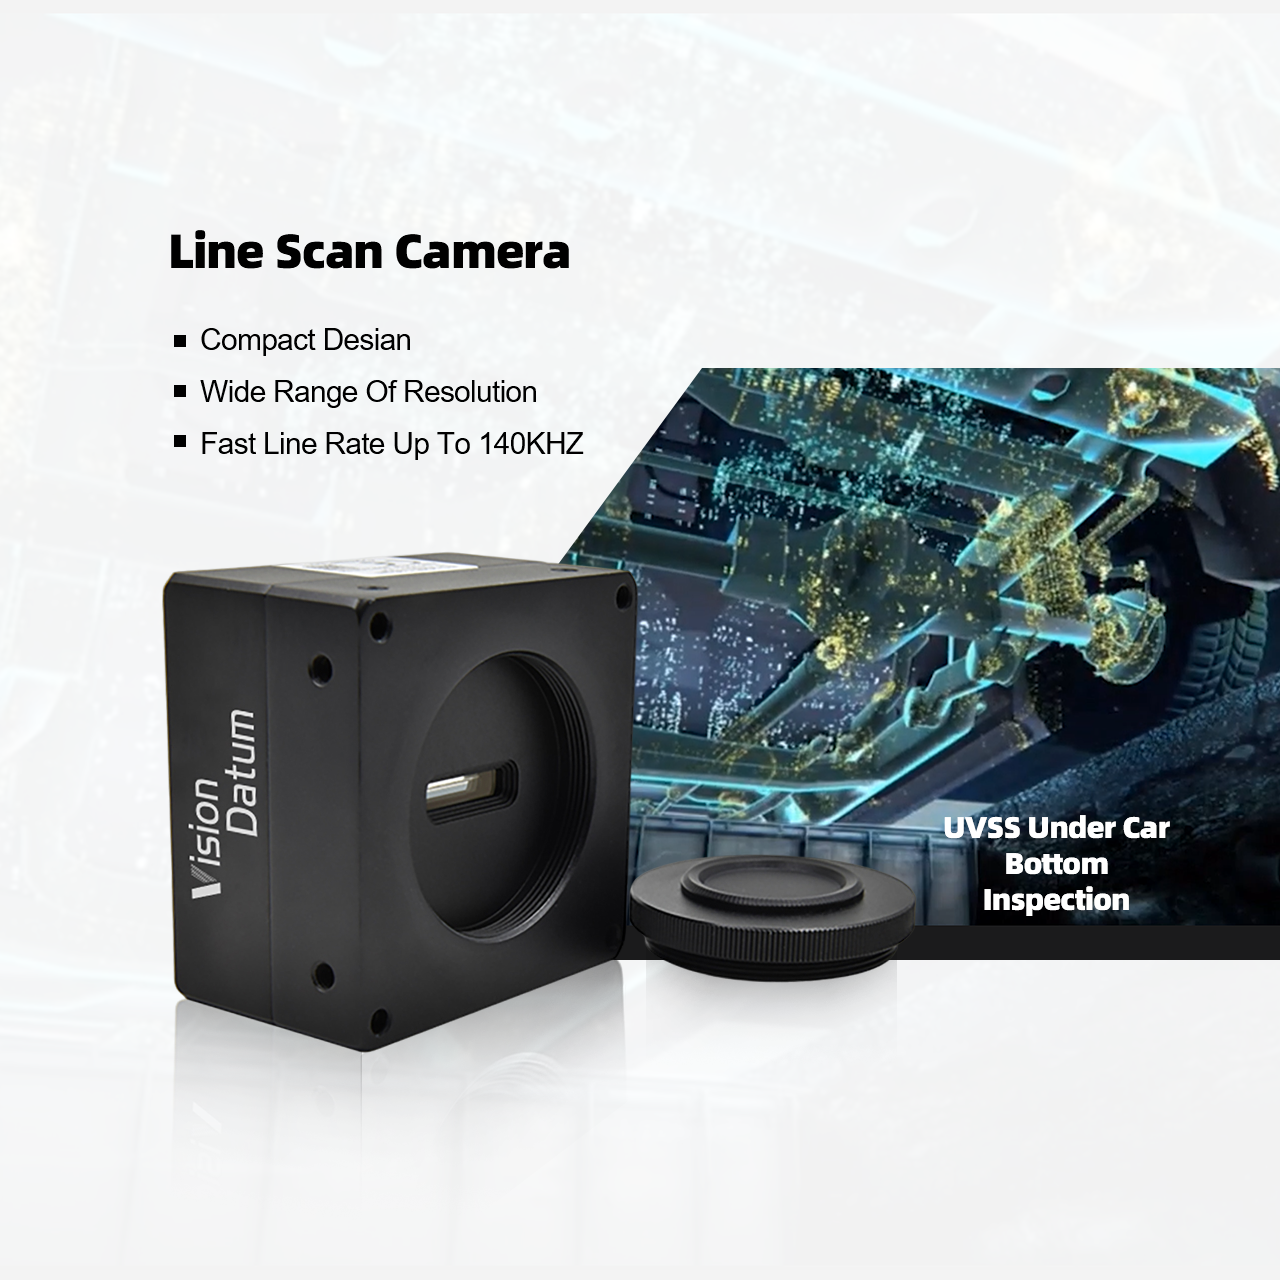 Камера линейного сканирования с креплением M72, 8K, 74 кГц, 7 мкм, CameraLink 